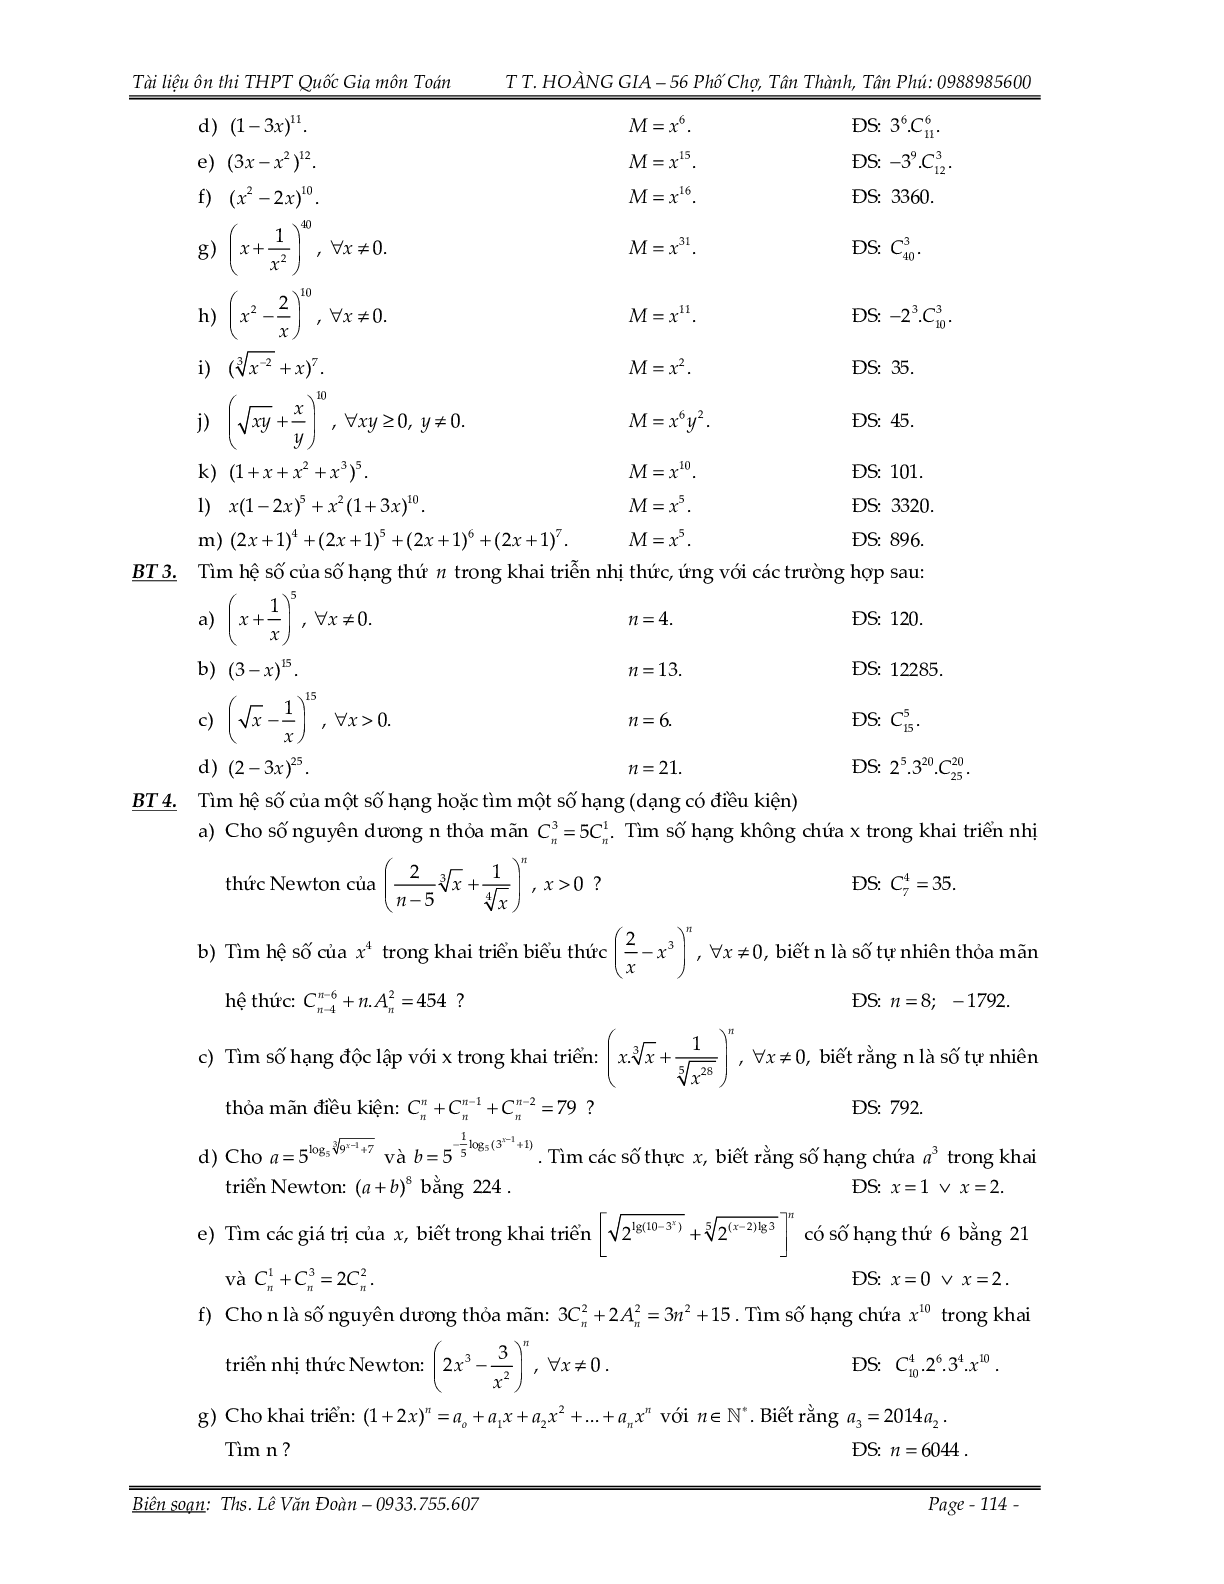 150 bài toán nhị thức Newton và xác suất (trang 2)